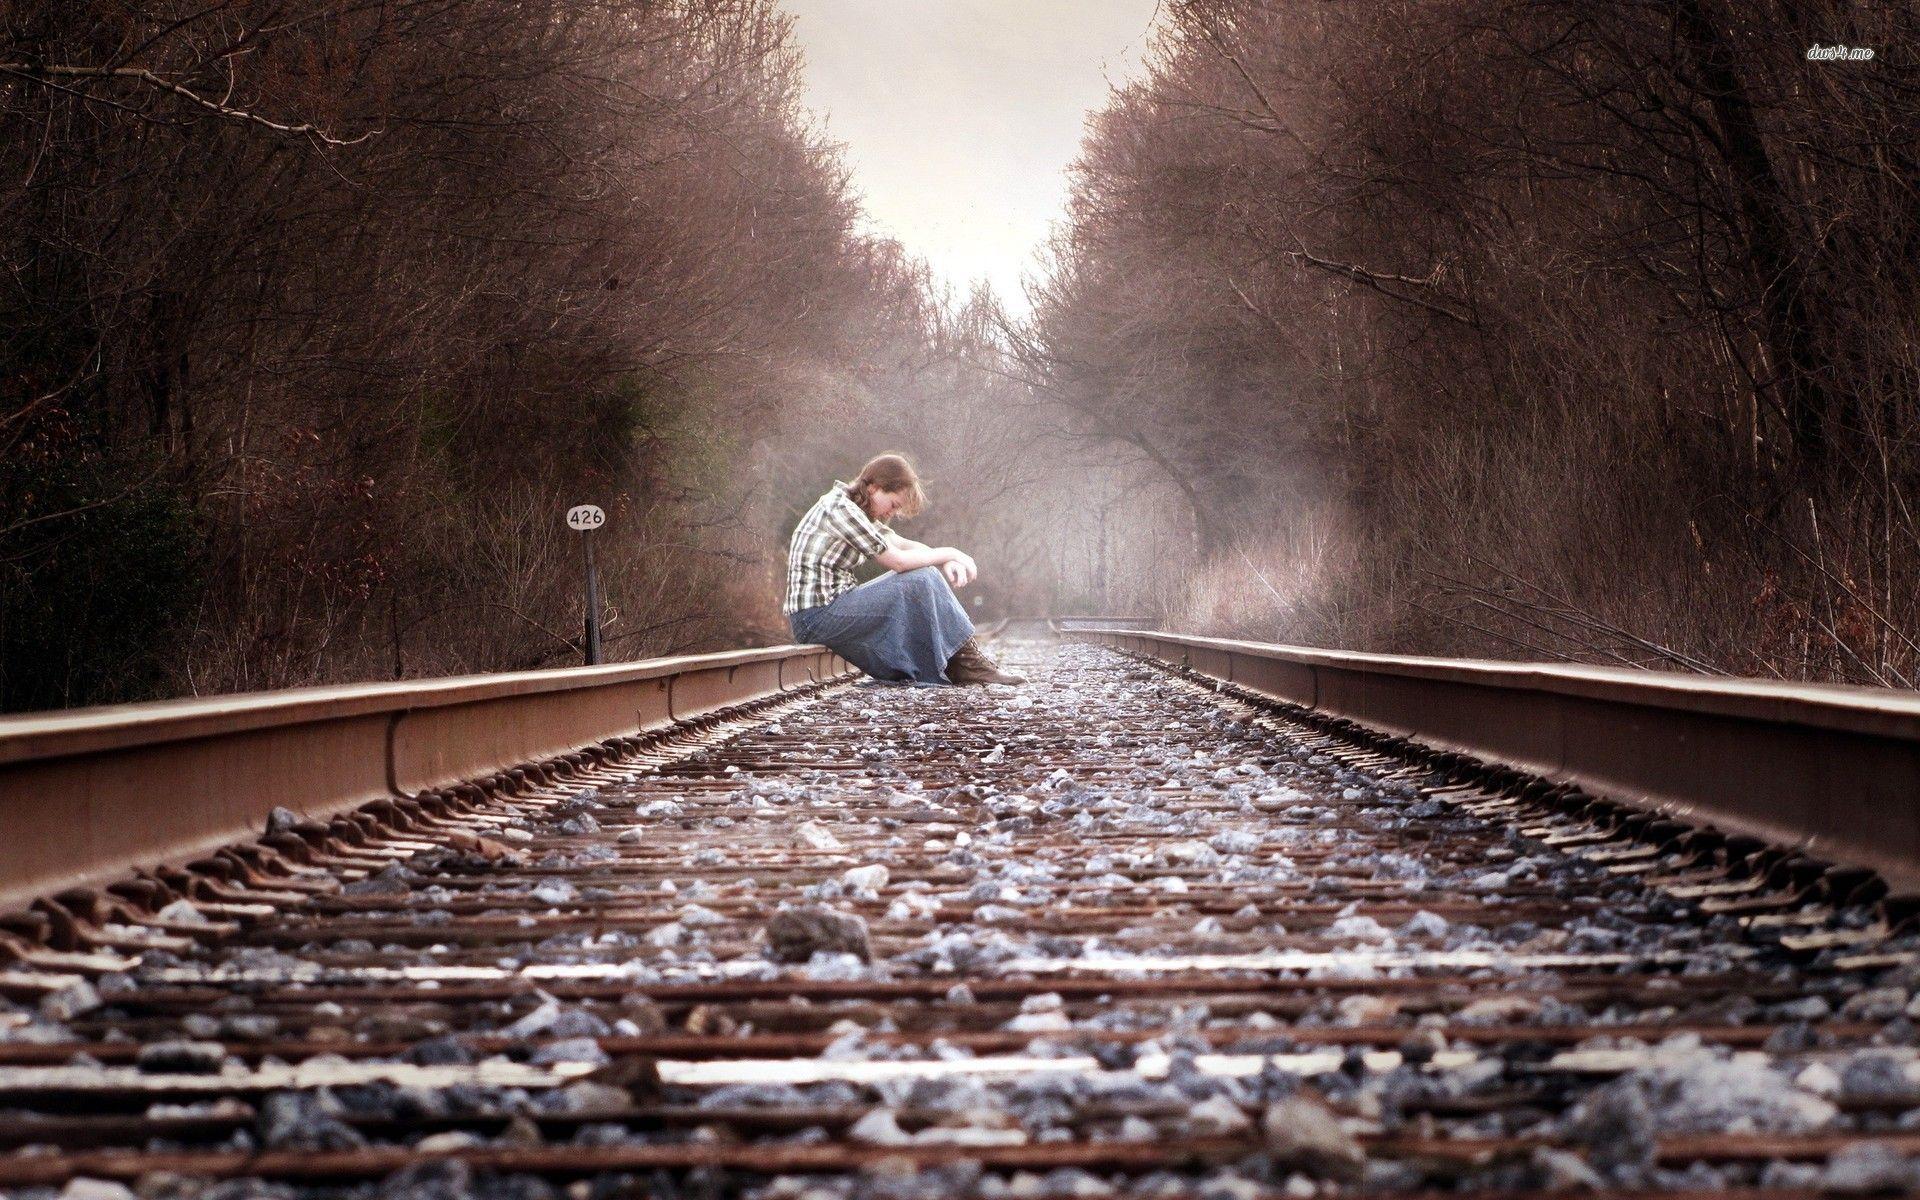 Sad Girl On Railway Track Image. Freeeasypics. Sad